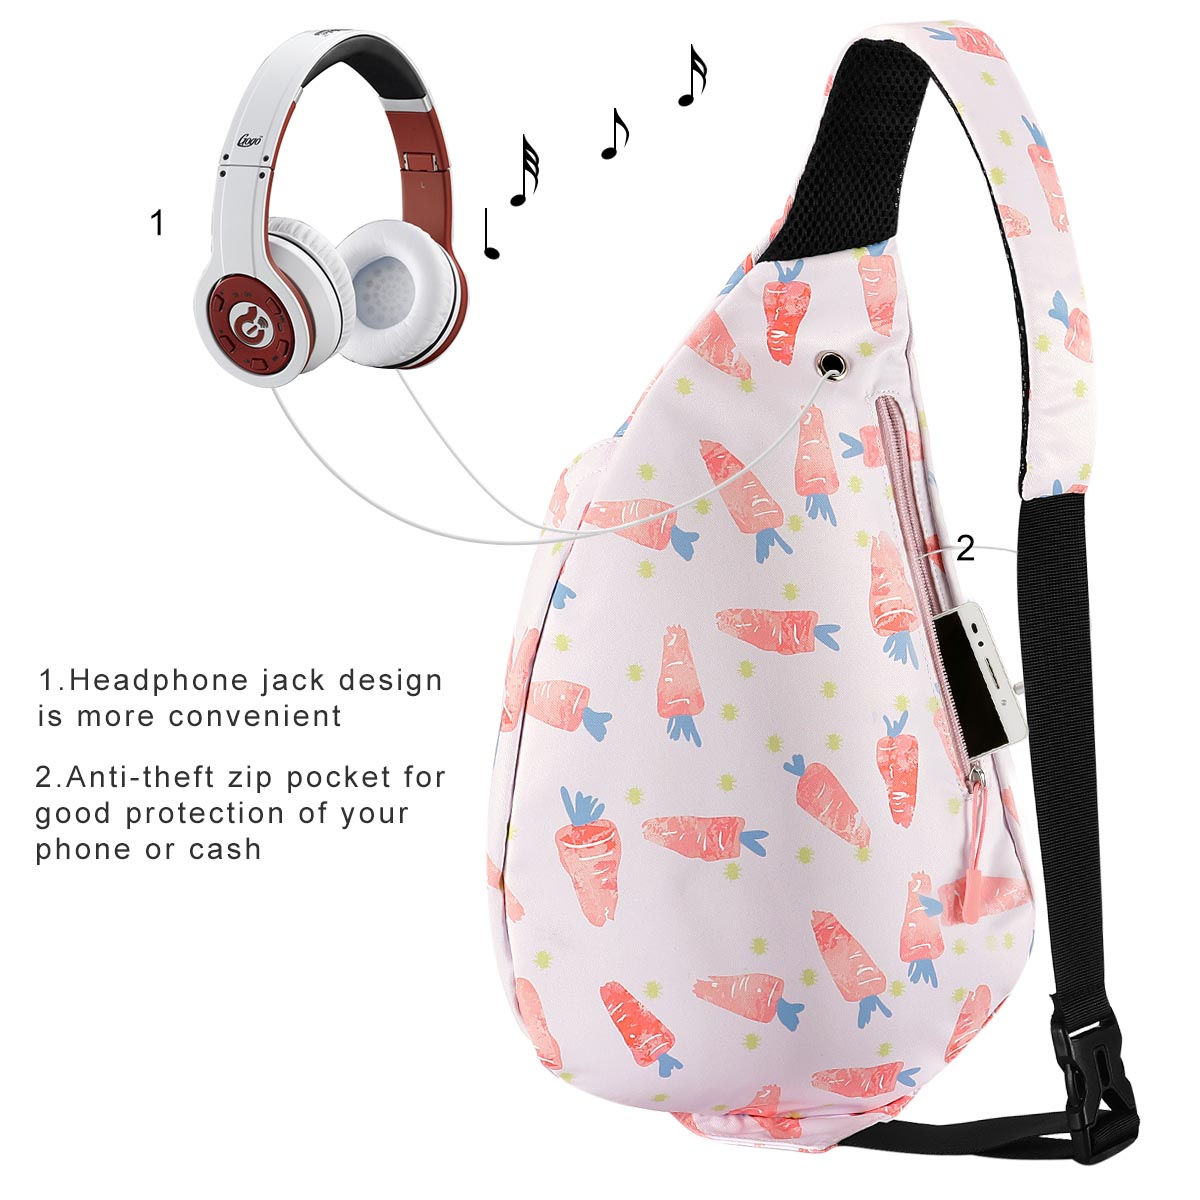 Sling Backpack - Rope Bag Crossbody Backpack Travel Multipurpose Daypacks for Men Women Lady Girl Teens - image 2 of 3